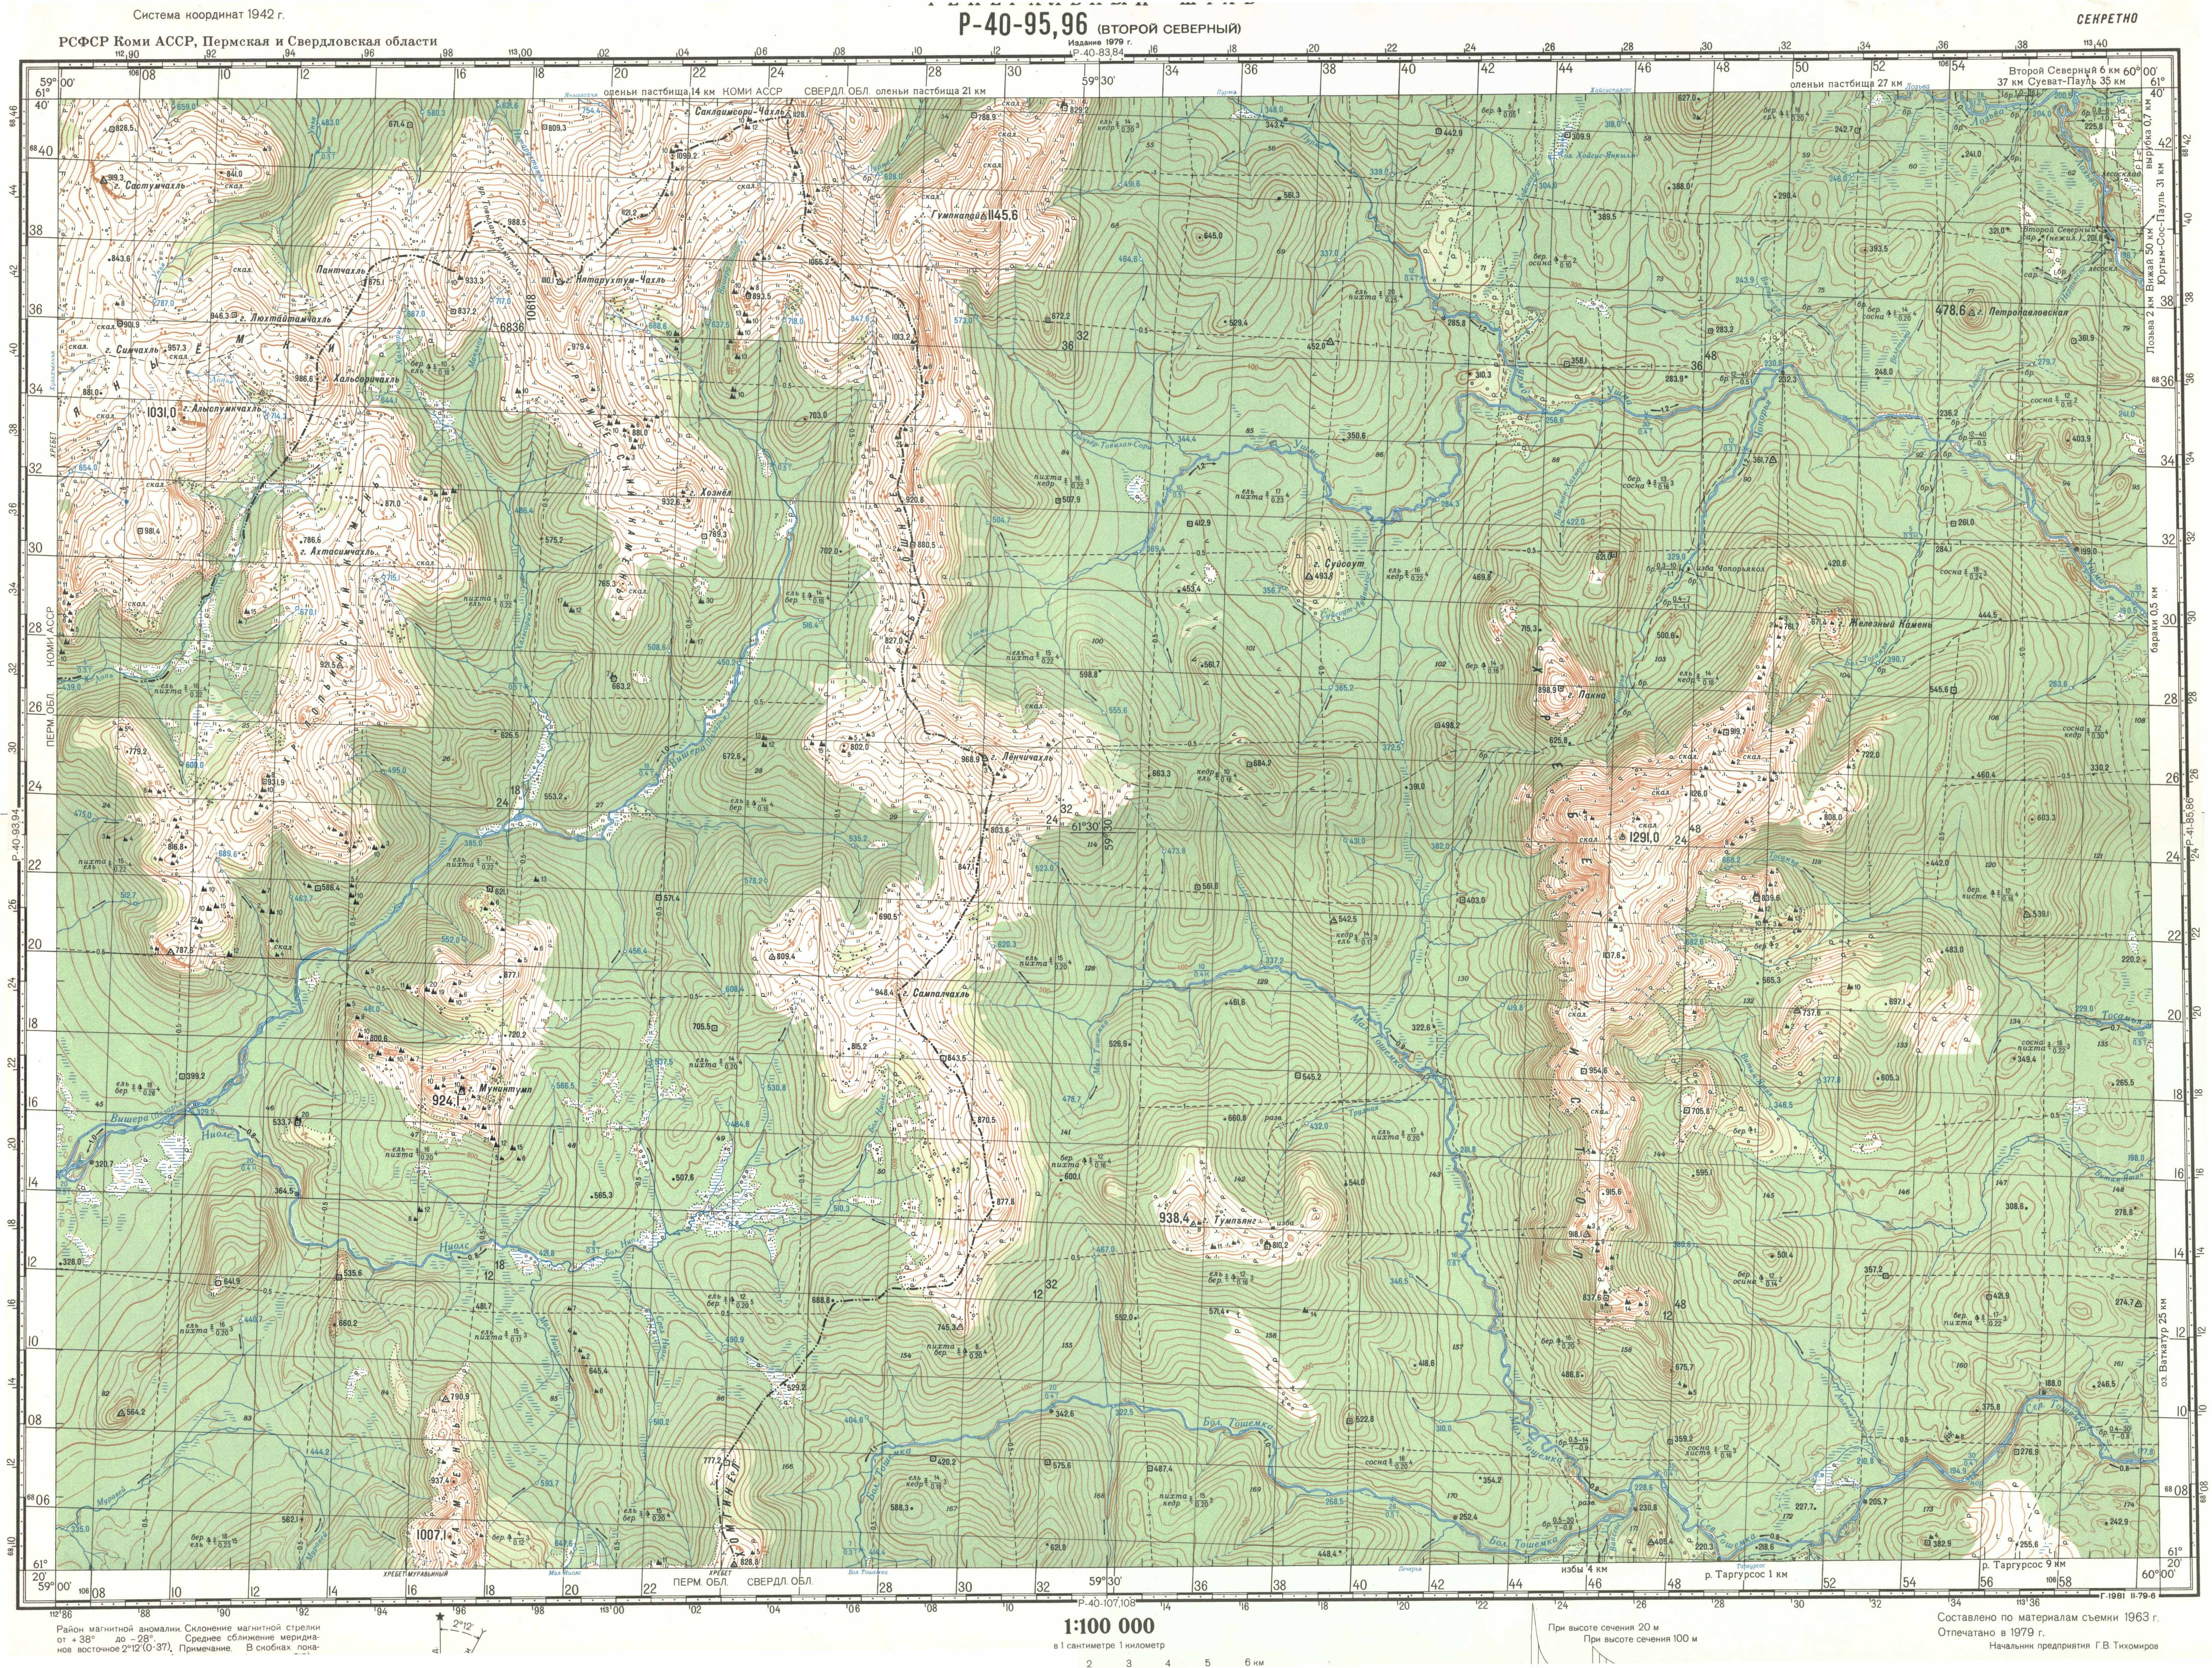 Топографические карты Генштаба / Карты листа P-40 (Северный Урал) / Карты масштаба 1:100000 (километровки) / Лист P-40-95,96, Второй Северный